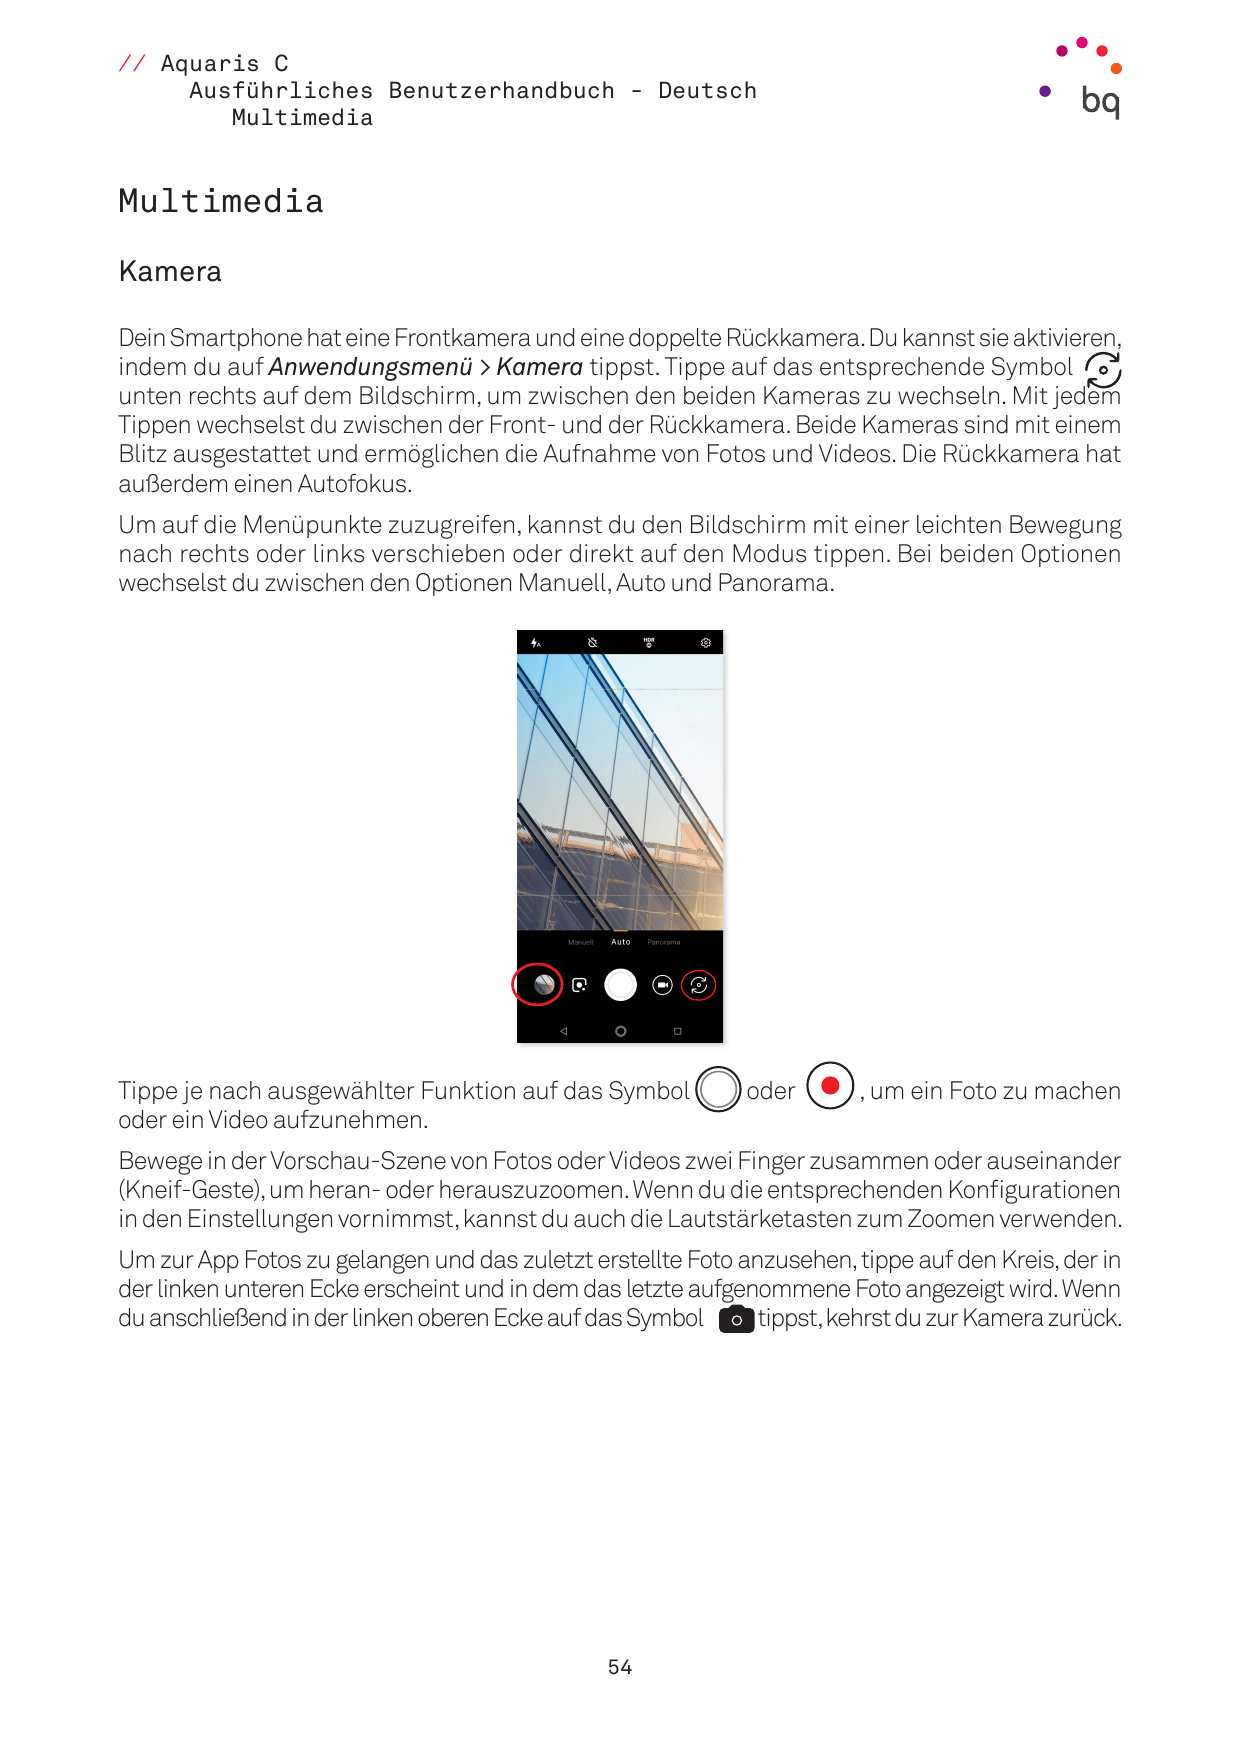 // Aquaris CAusführliches Benutzerhandbuch - DeutschMultimediaMultimediaKameraDein Smartphone hat eine Frontkamera und eine dopp